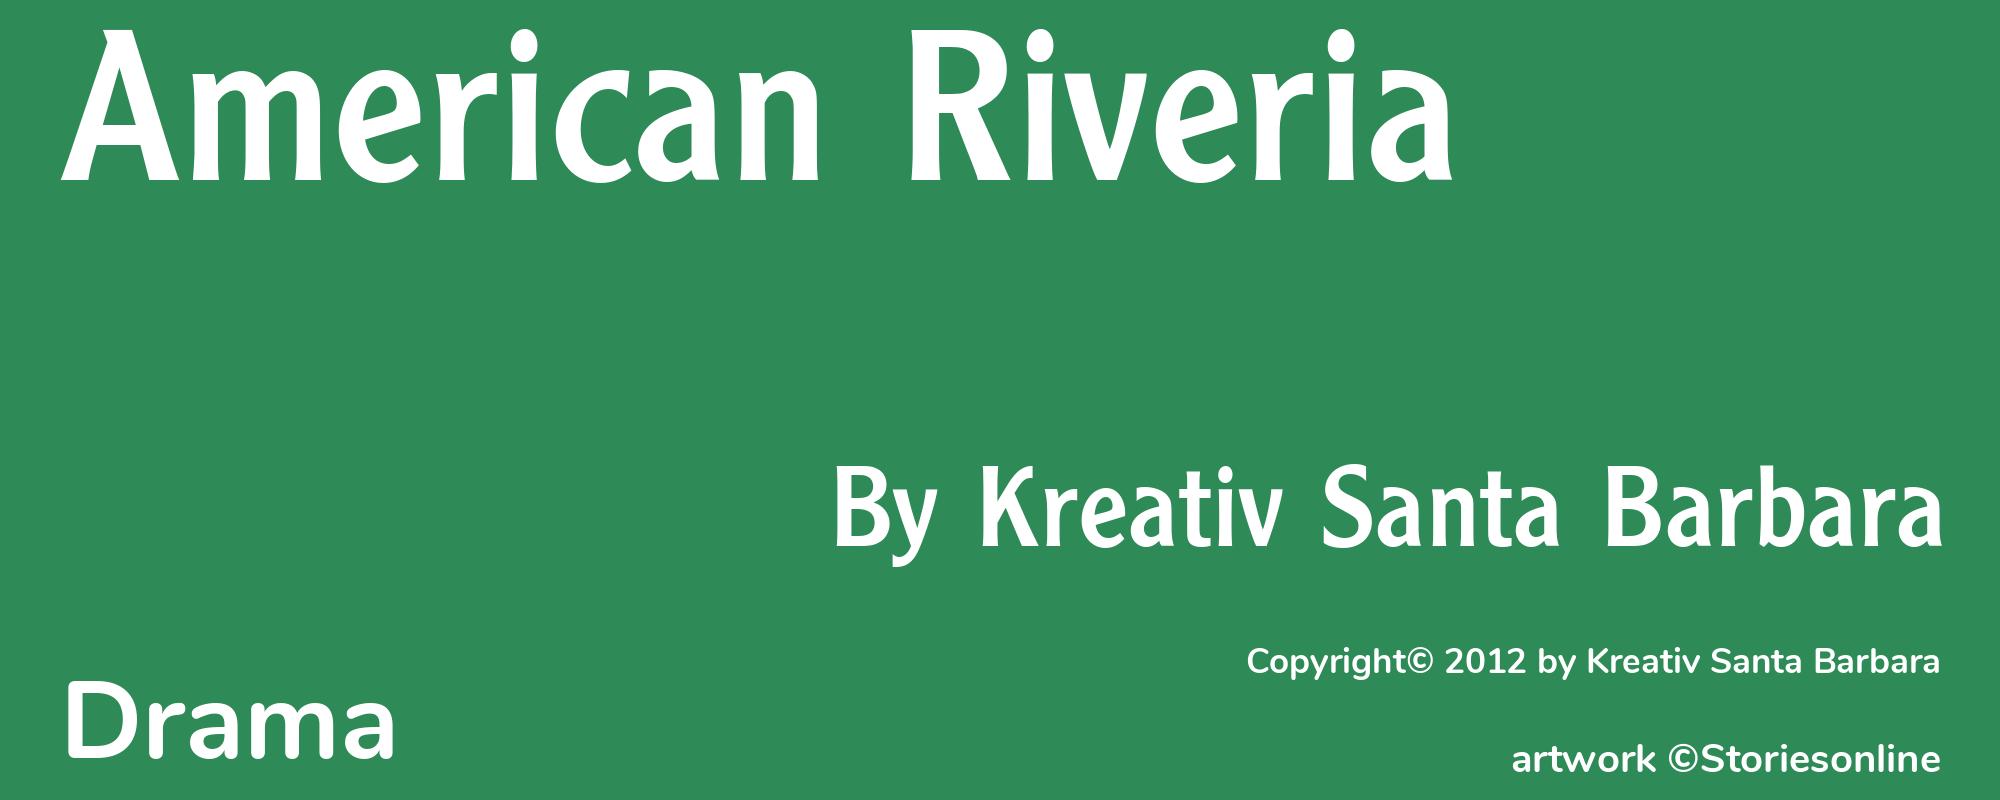 American Riveria - Cover